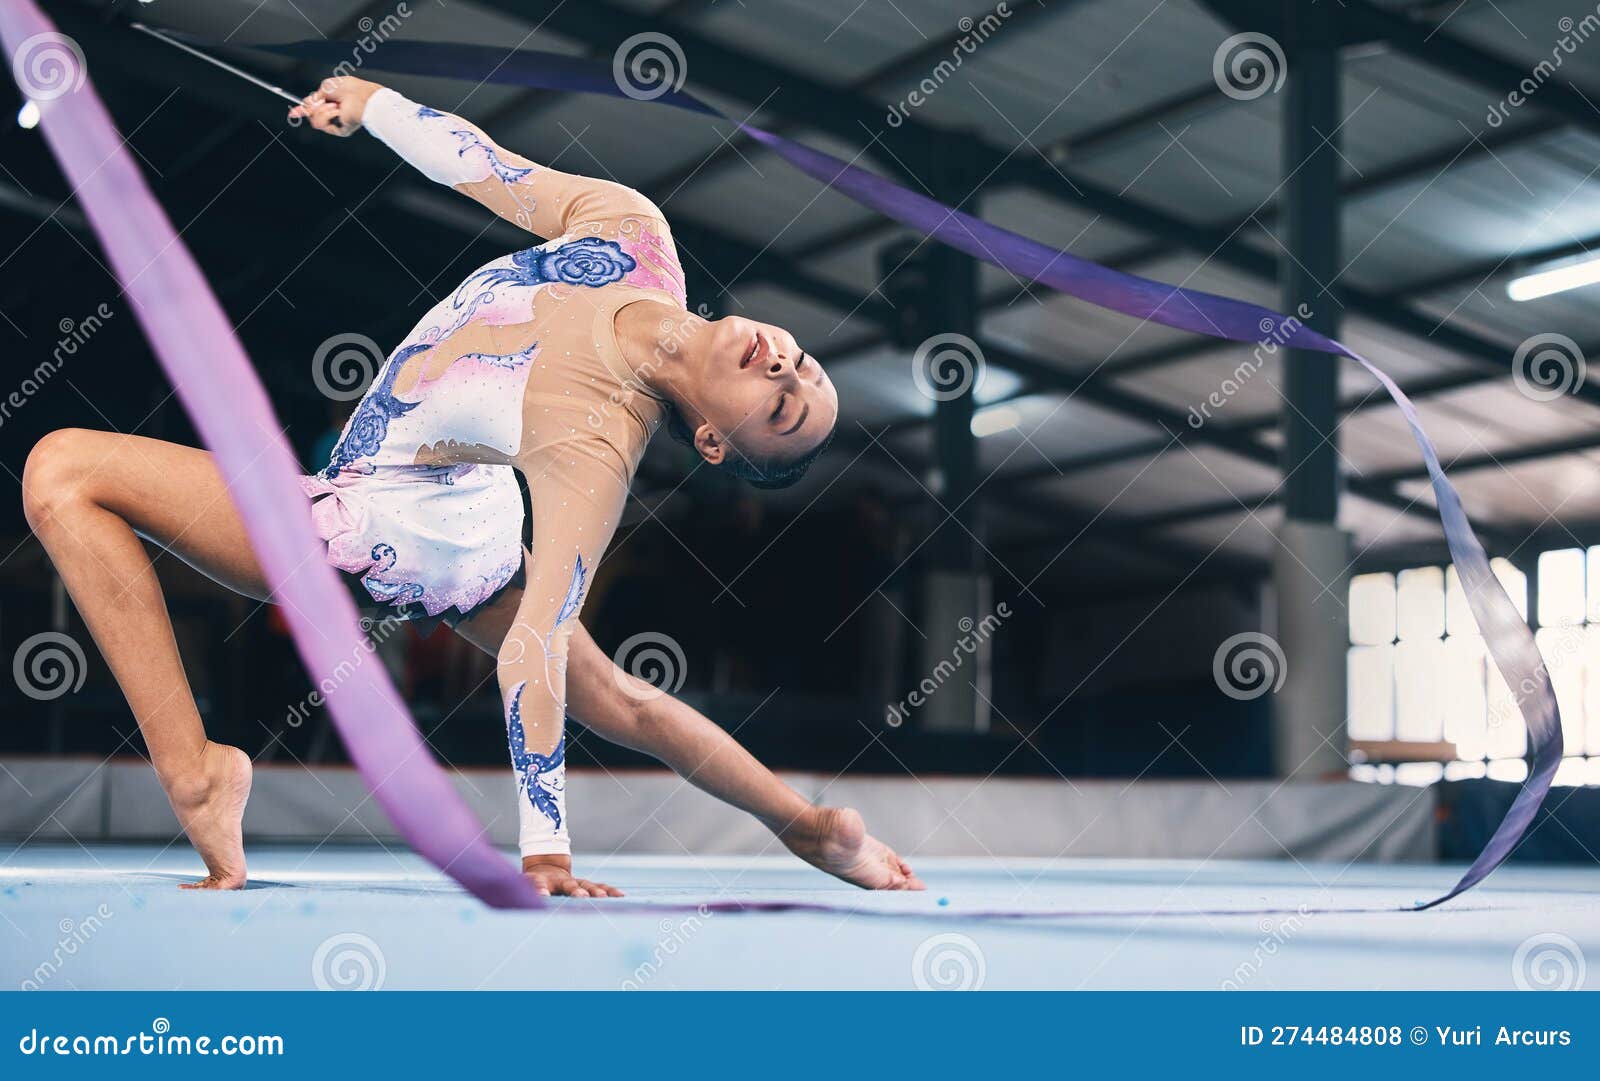 Gymnastique à Ruban Et Femme Flexible S'étirant En Performance Danse  Entraînement Et Compétition Sportive. Rythmique Femelle Photo stock - Image  du ajustement, exécutez: 274484808